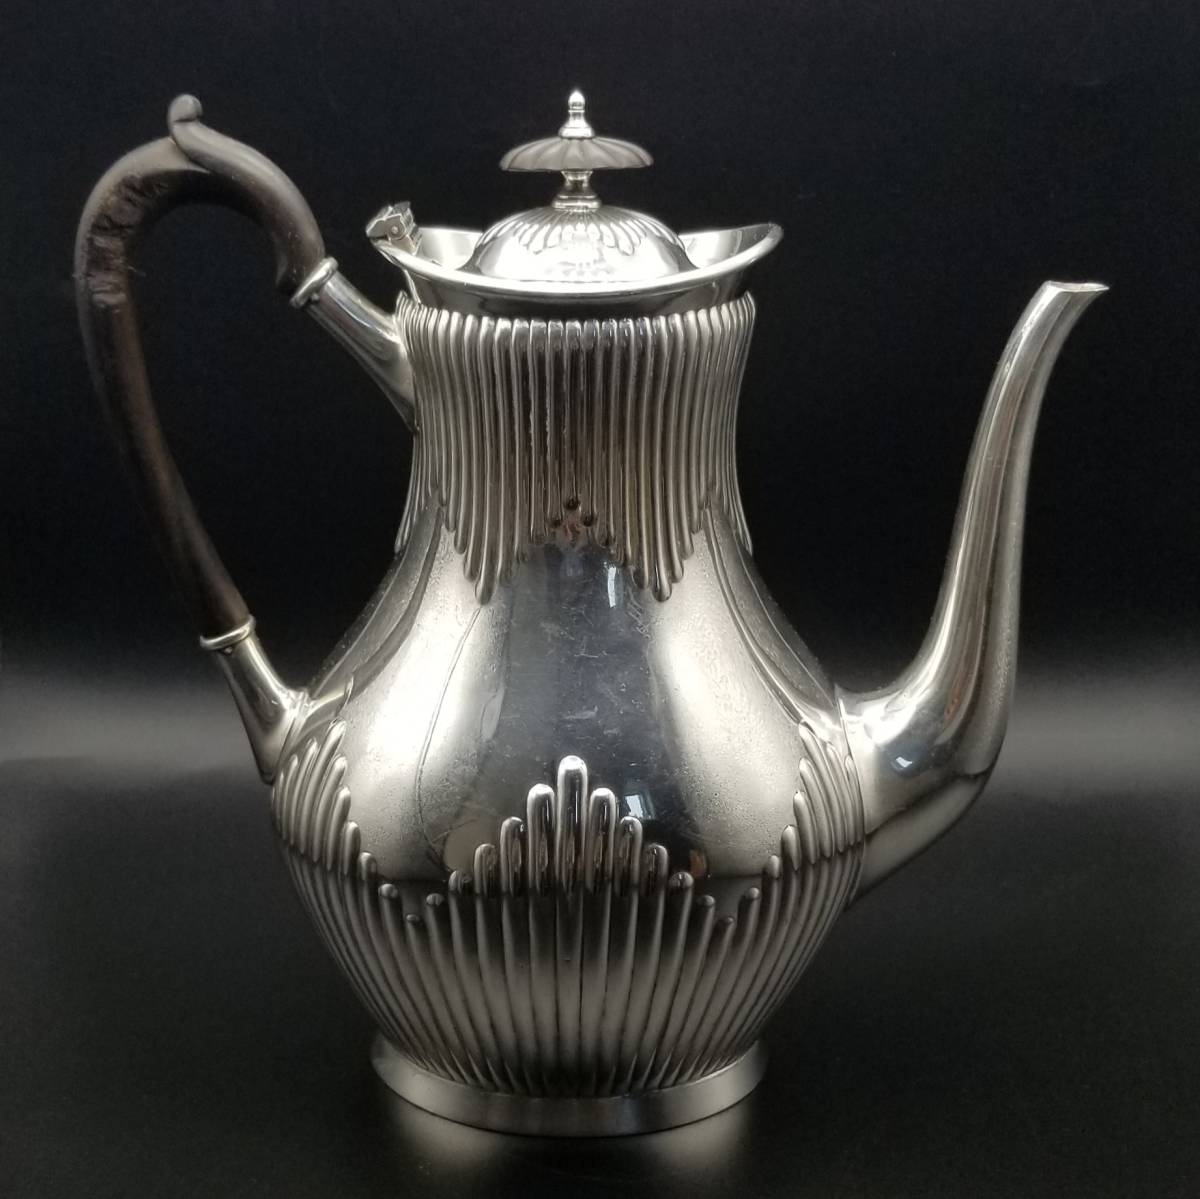 1897年 英国 アンティーク ヴィクトリア Elkington & Co. シルバーメッキ ティーポット 銀メッキ 紅茶 デコラティブ 彫金 フルーティング_画像3